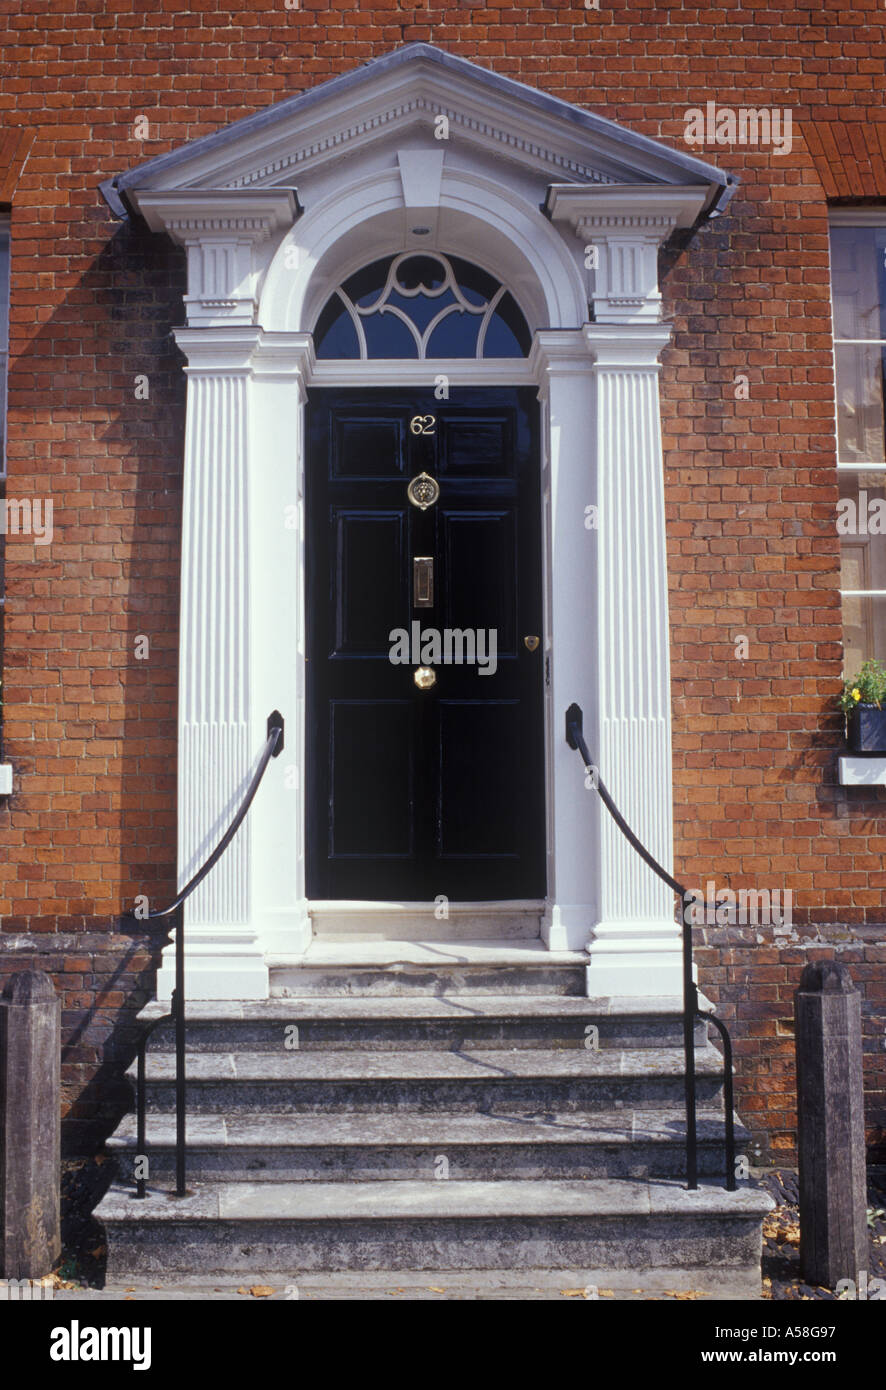 Farnham Surrey England klassischen georgischen Haustür auf Backstein Stadthaus mit Giebel und Oberlicht Stein Schritte bis zur Tür Stockfoto